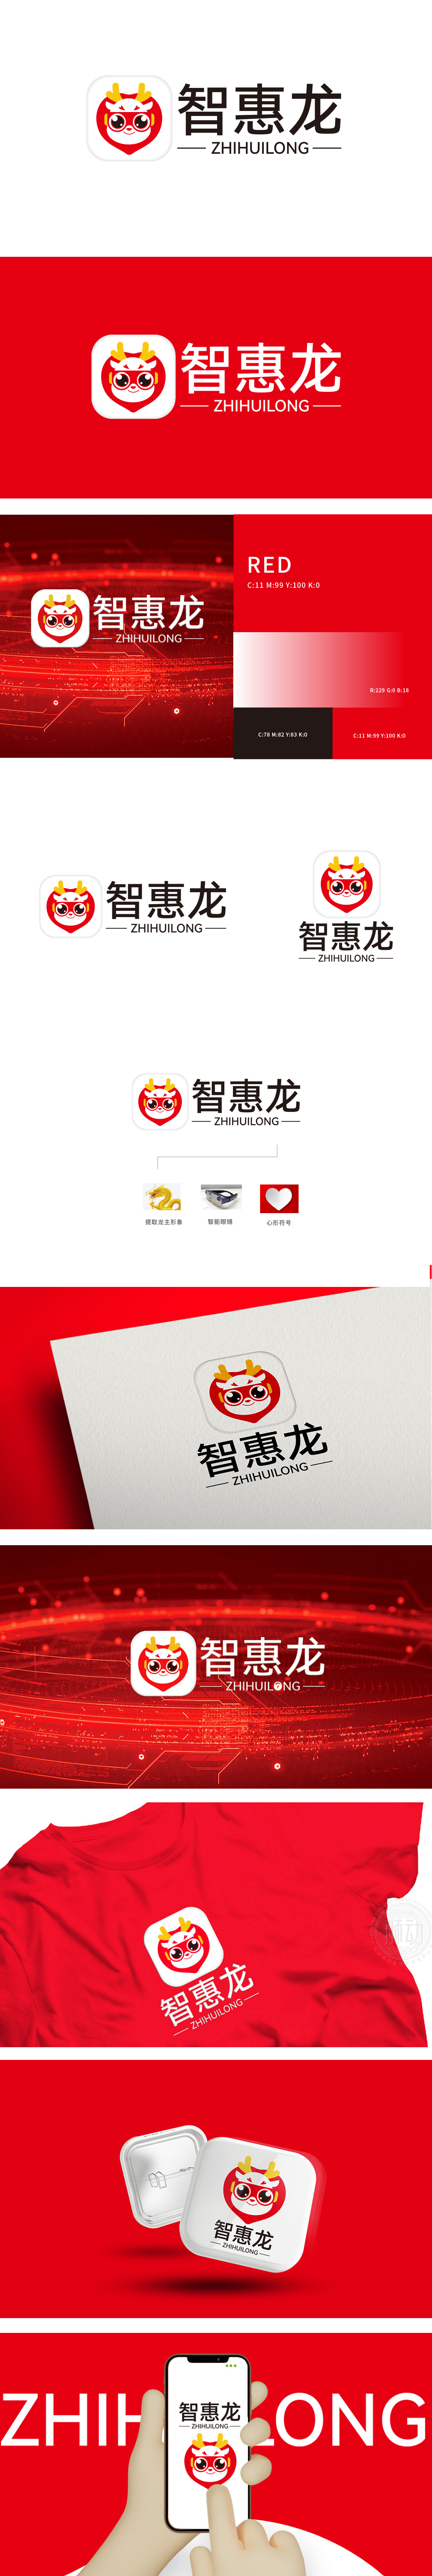 智惠龙	互联网/线上平台	吉祥物设计